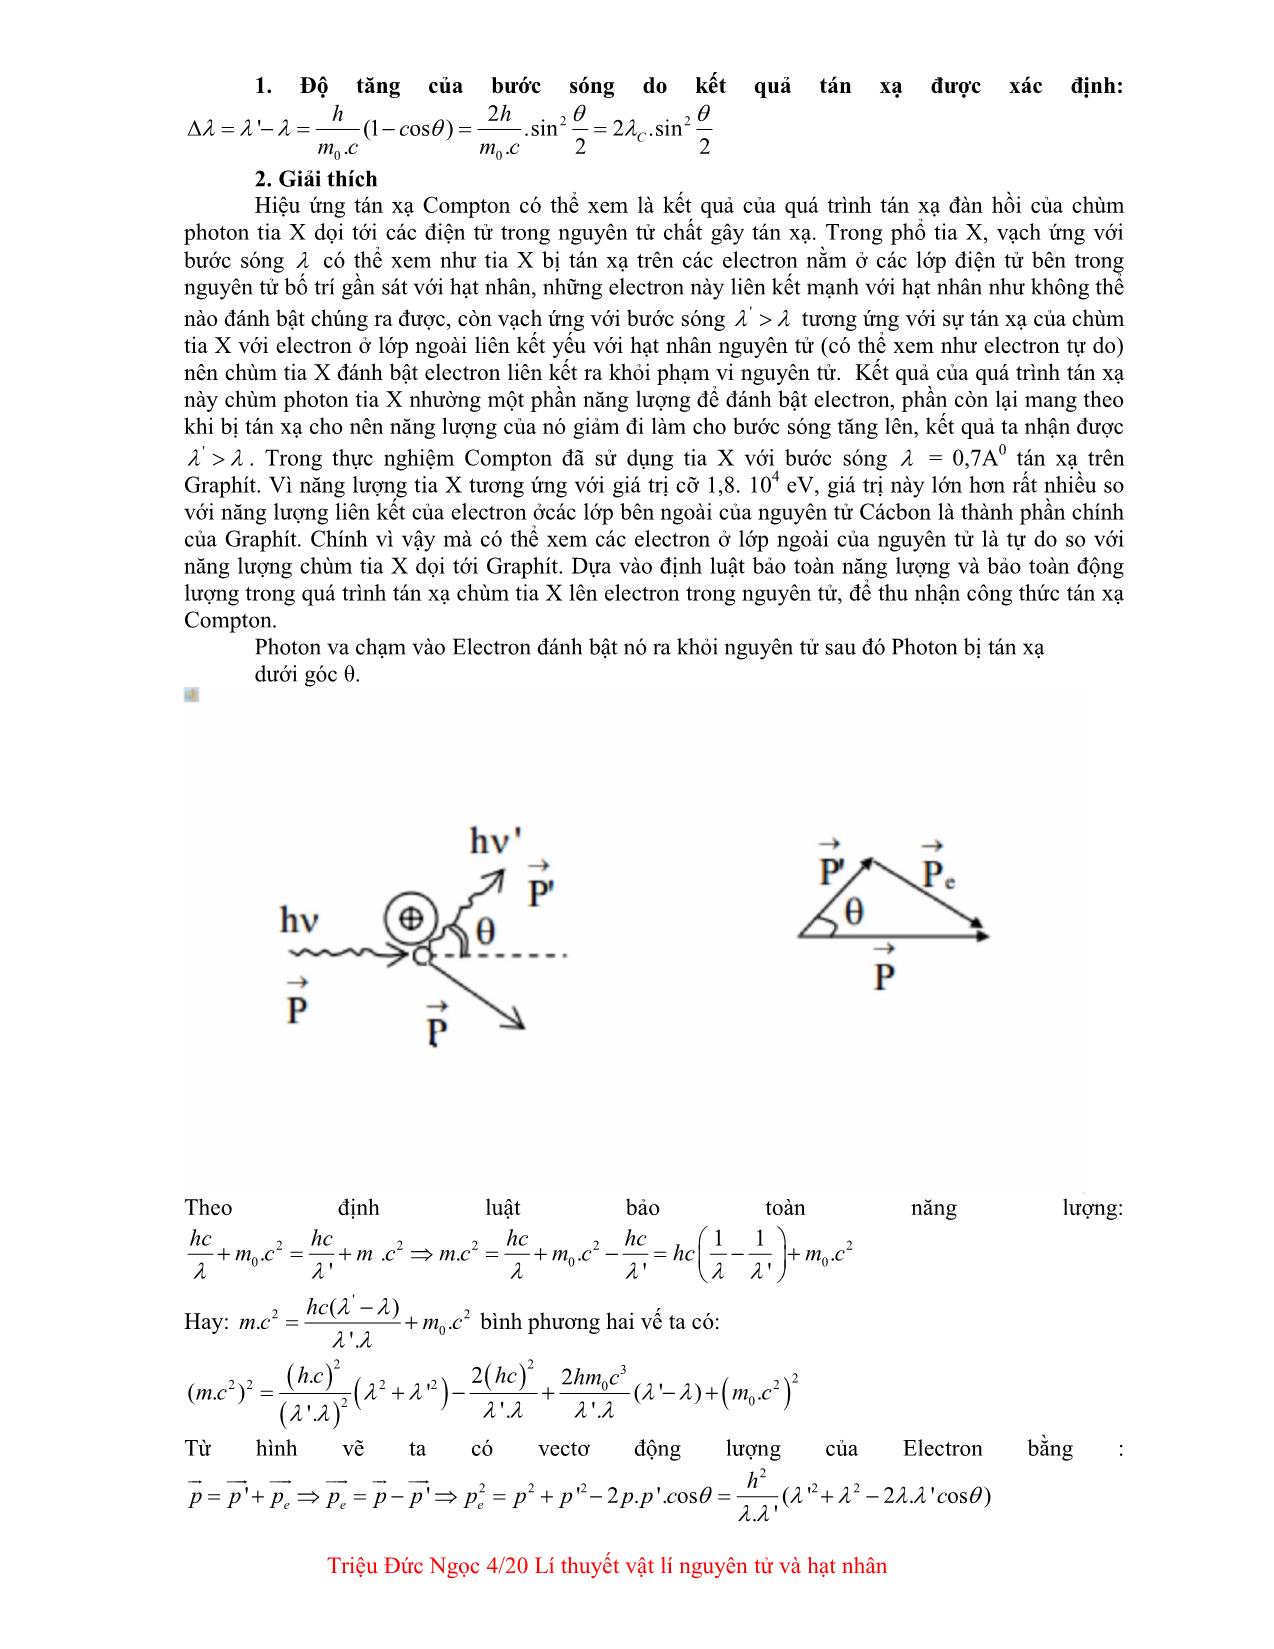 Giáo trình Lý thuyết vật lí nguyên tử và hạt nhân trang 4